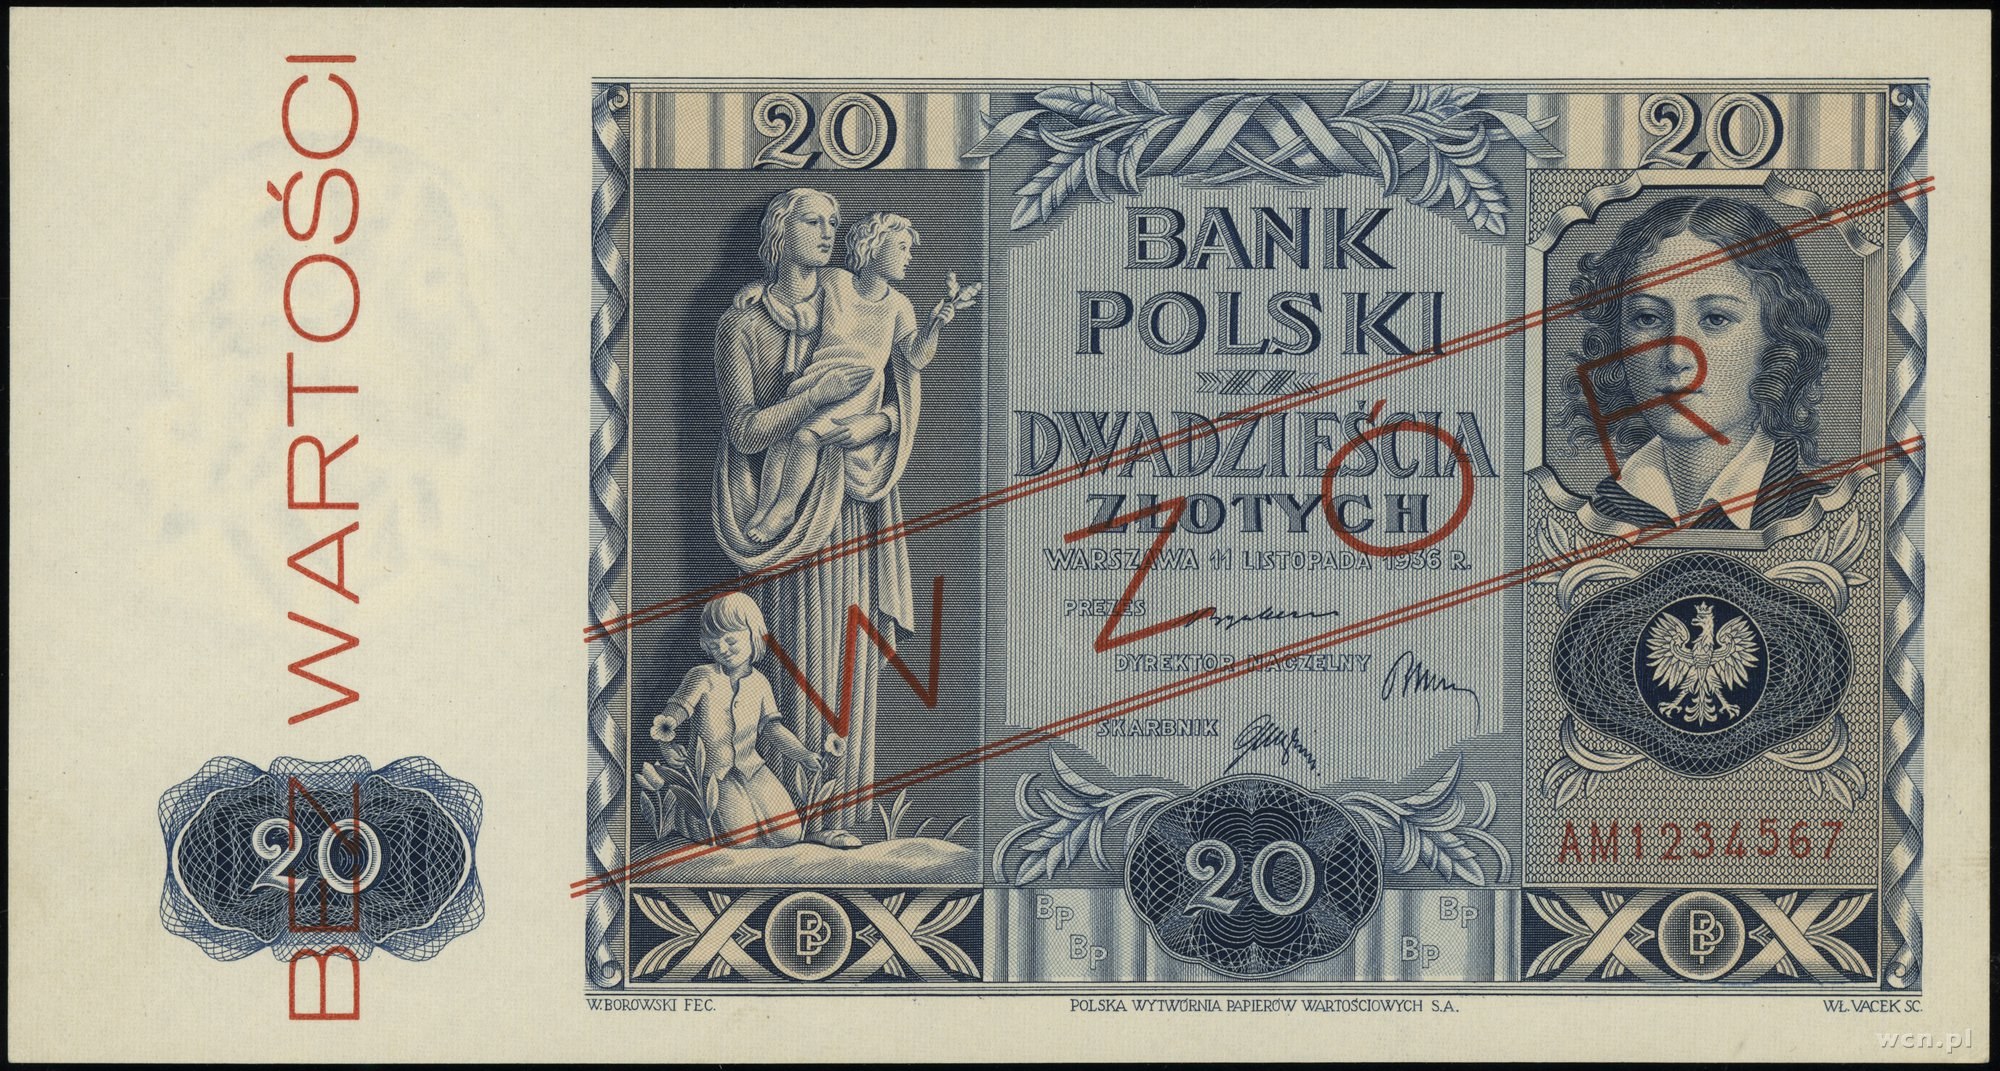 120 млн польских злотых. Банкноты Польши 1936. 1000 Польских злотых в рублях. 1 Миллион польских злотых. 20 Польских злотых в рублях.